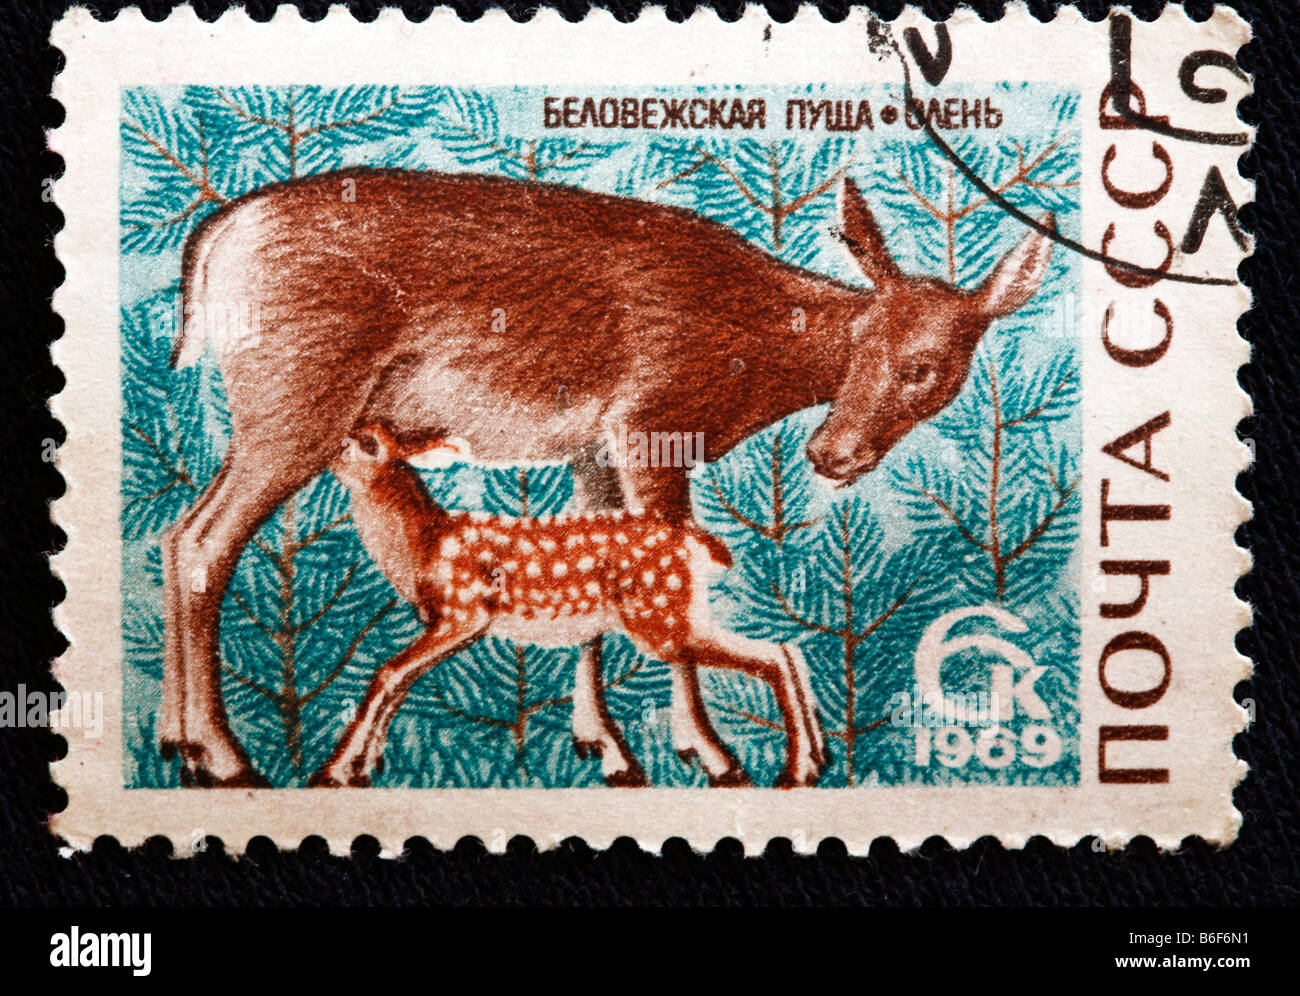 Red Deer (Cervus elaphus), timbre-poste, URSS, 1969 Banque D'Images